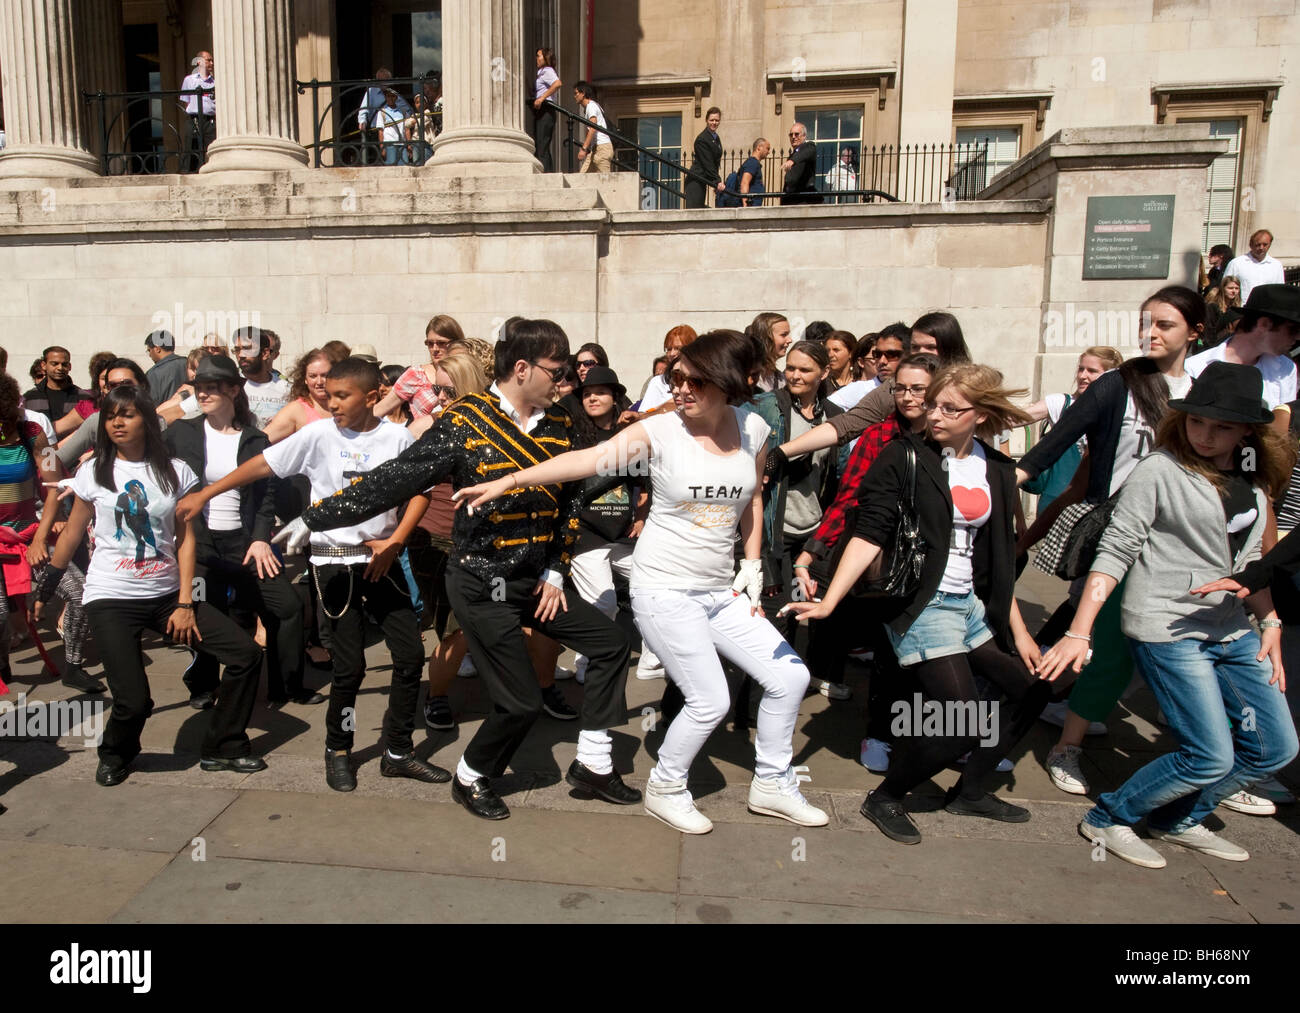 Michael Jackson fans de recréer le célèbre Thriller Dance à Trafalgar Square à Londres Banque D'Images